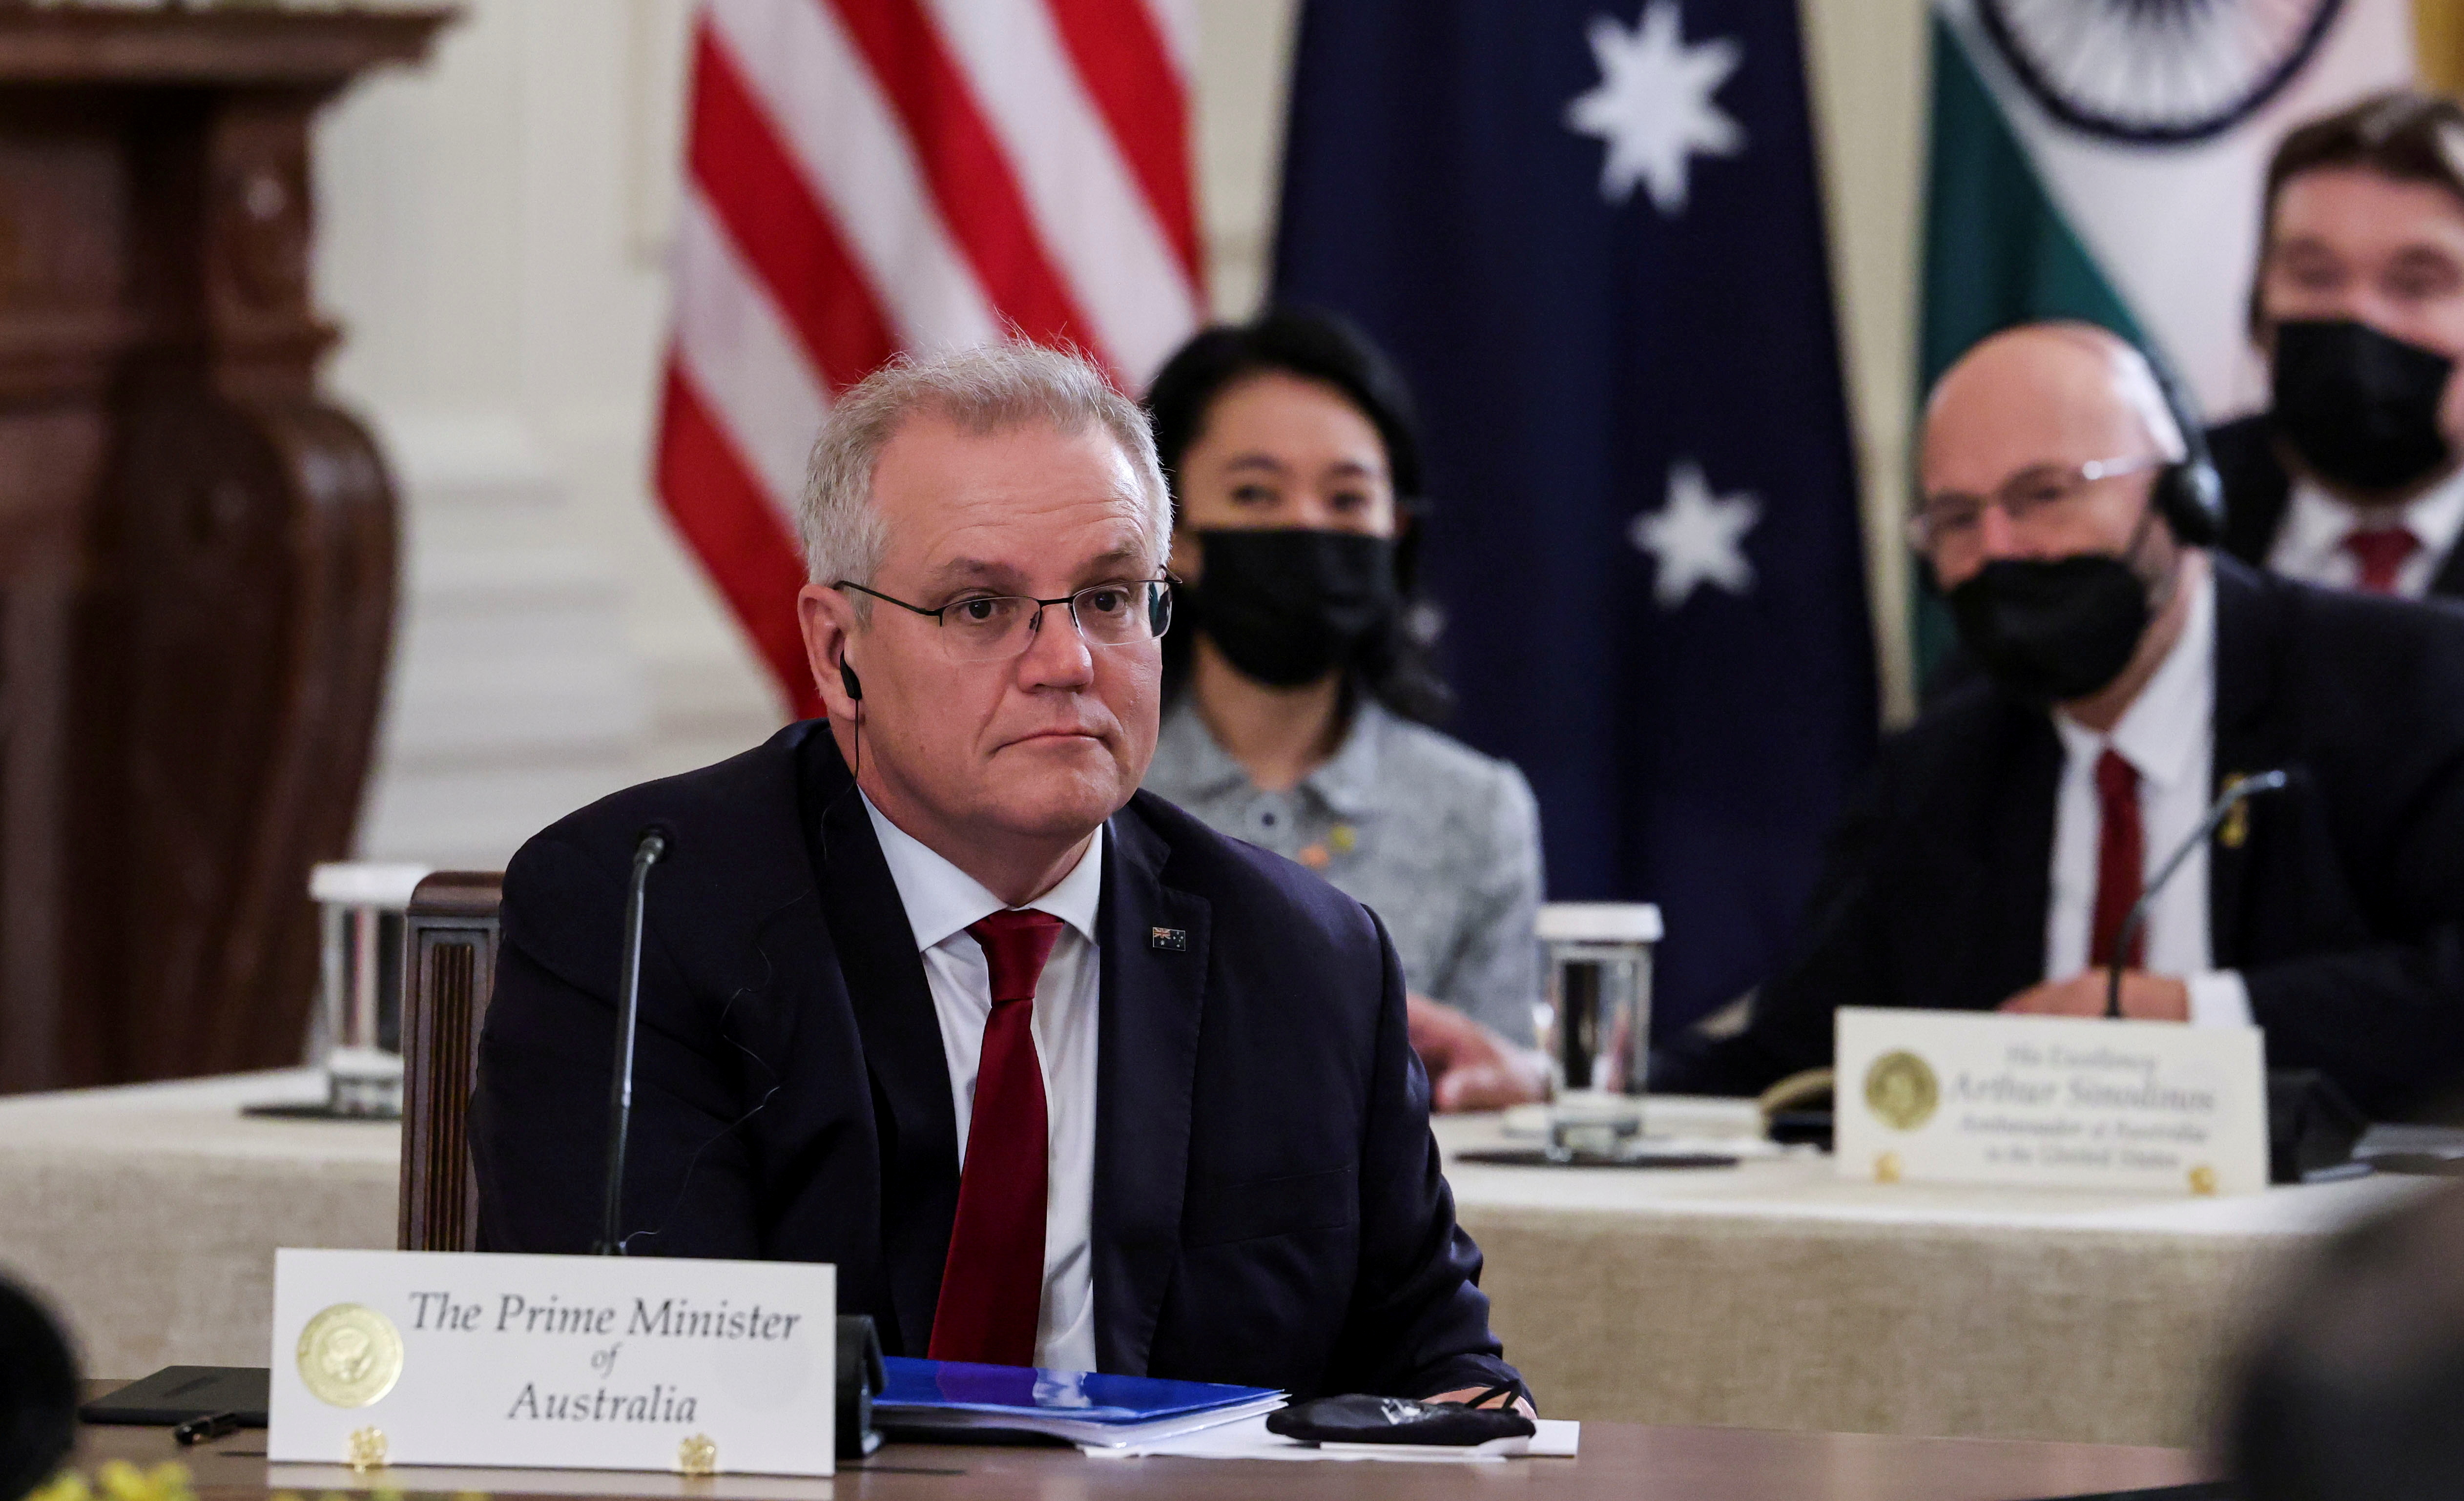 Australia's Prime Minister Scott Morrison at 'Quad' summit at the White House in Washington